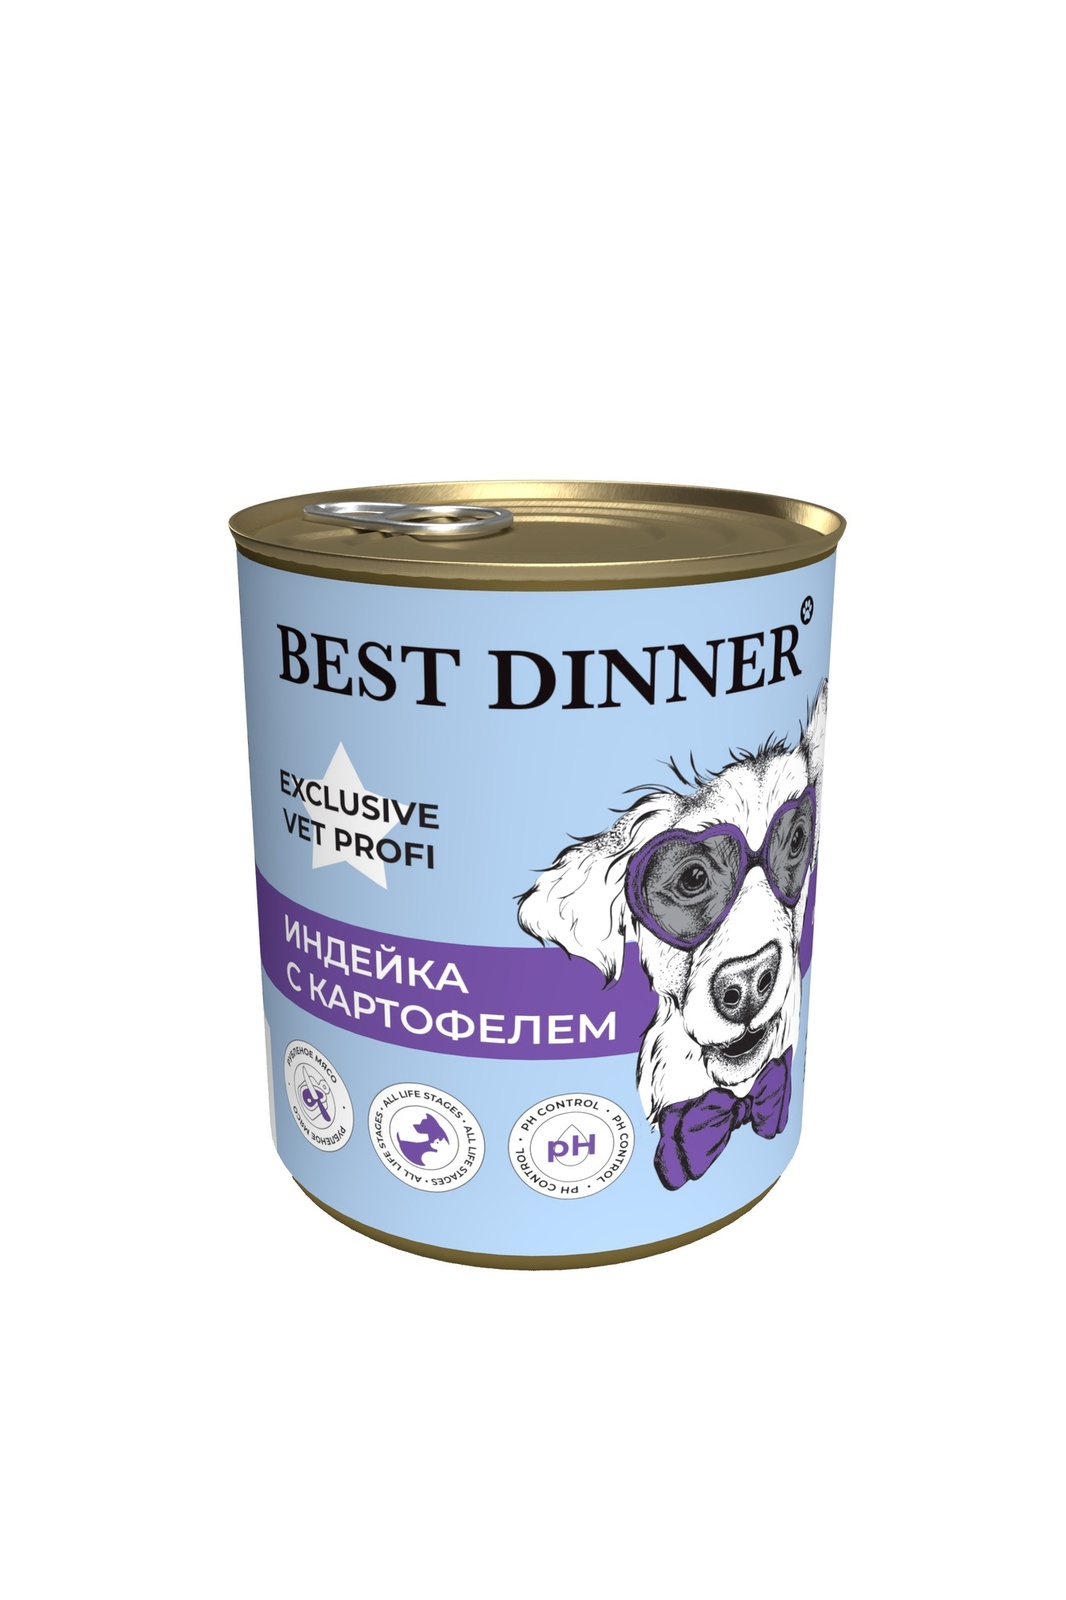 Best Dinner Best Dinner консервы для собак Exclusive Urinary Индейка с картофелем (340 г) best dinner best dinner консервы ягненок с сердцем для собак с чувствительным пищеварением 340 г